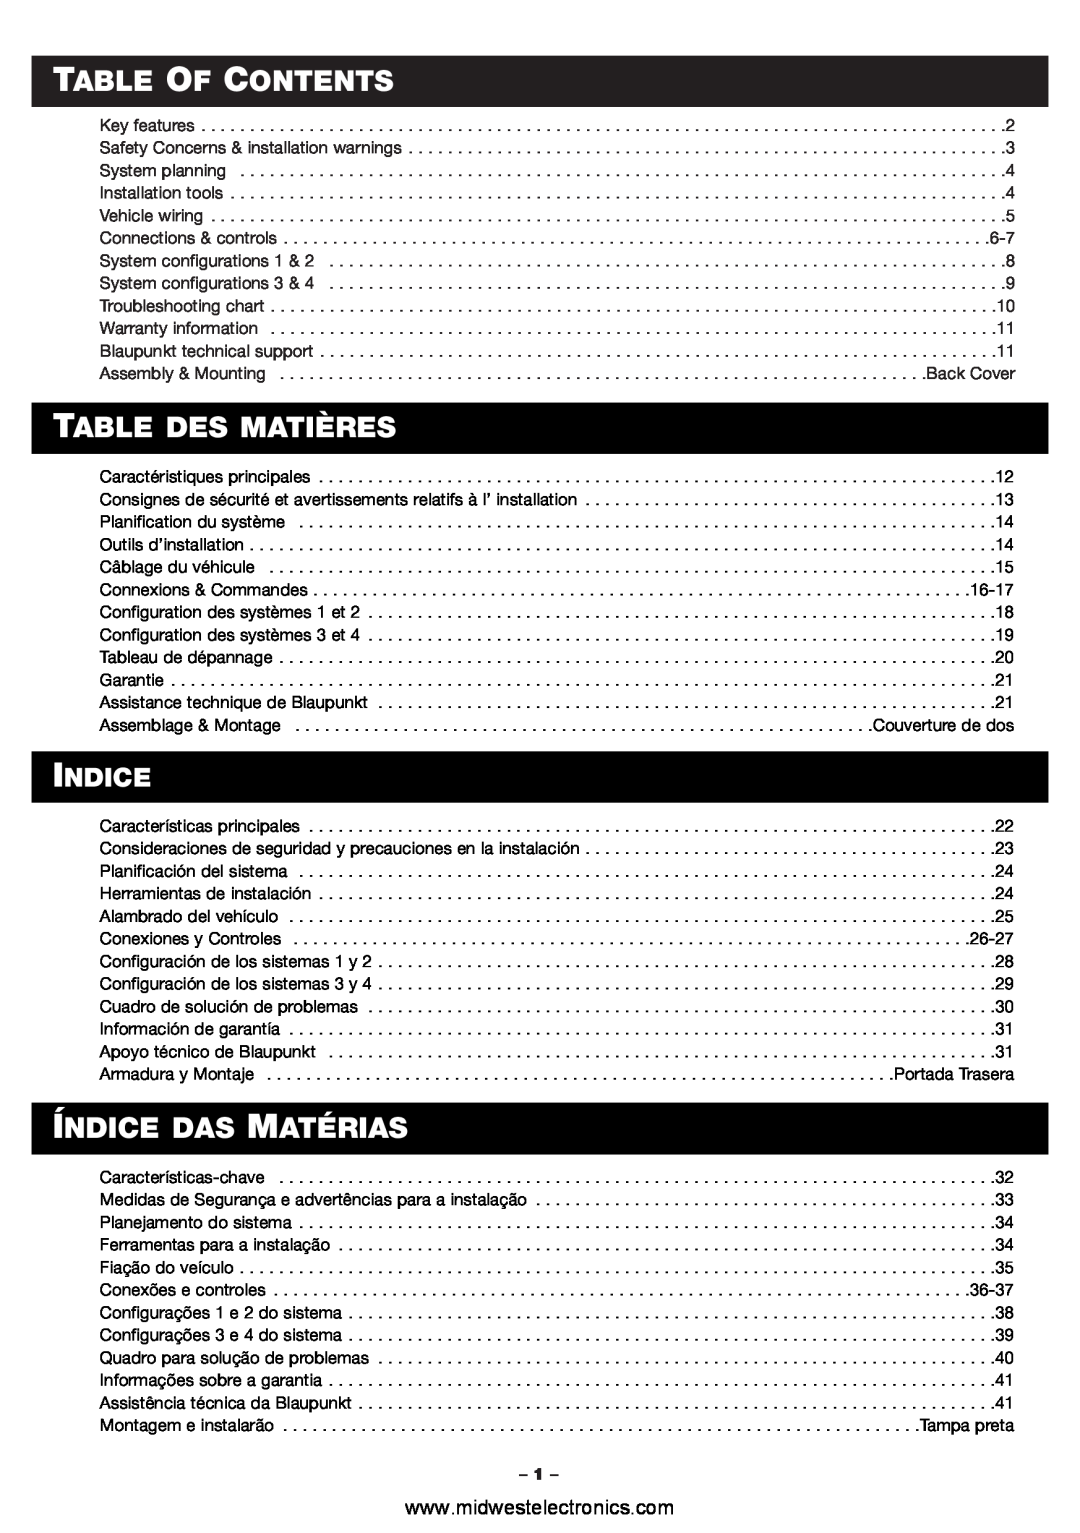 Blaupunkt PCA460 manual Table Of Contents, Table Des Matières, Índice Das Matérias, Indice 